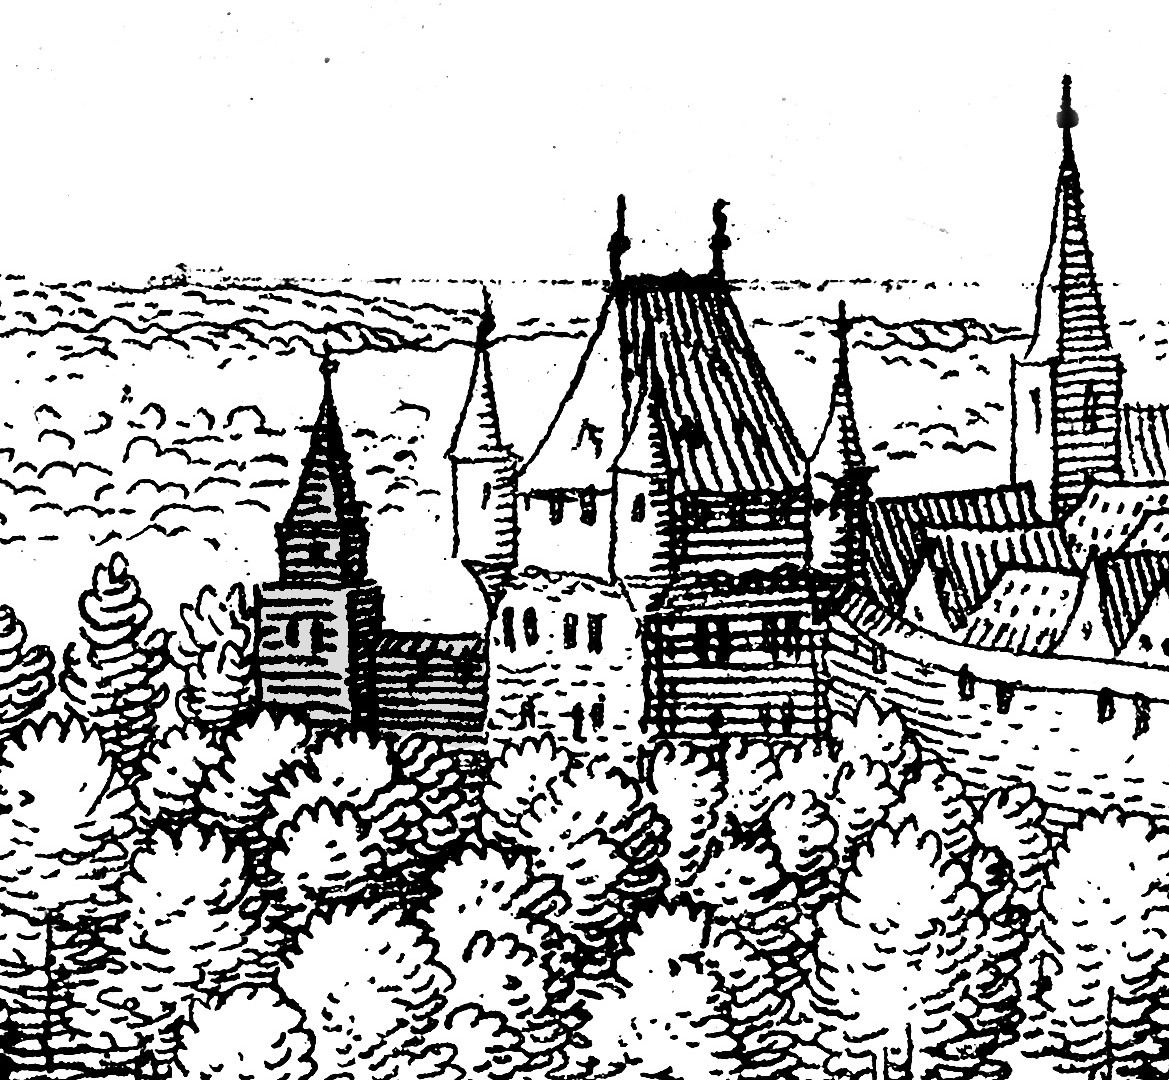 Historische Darstellung des Ostentores aus dem Jahre 1647 